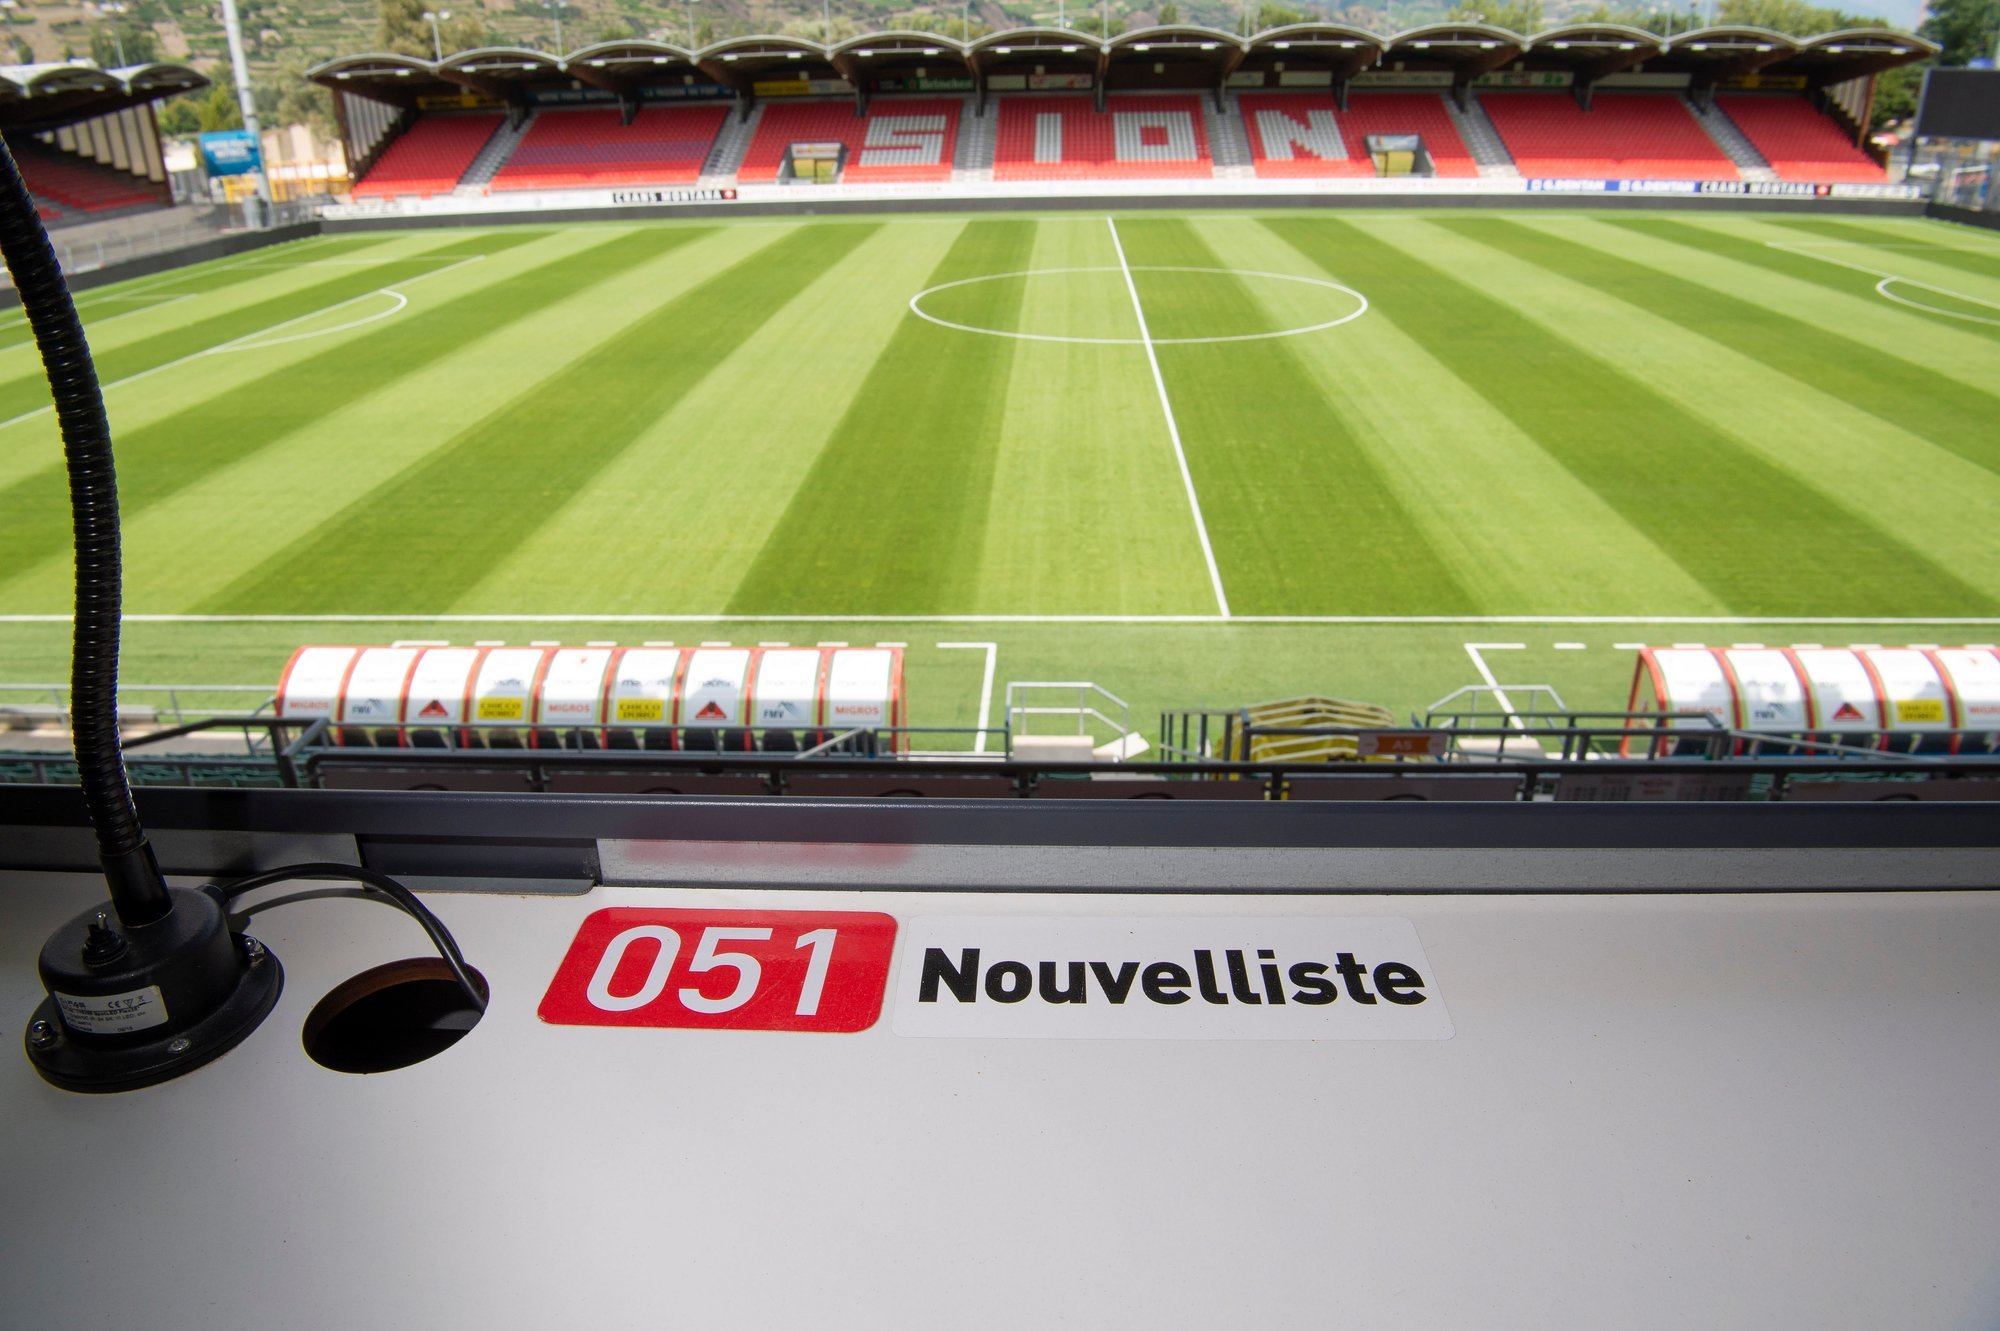 Pour la troisième saison consécutive, le boycott du FC Sion envers les journalistes du "Nouvelliste" est maintenu